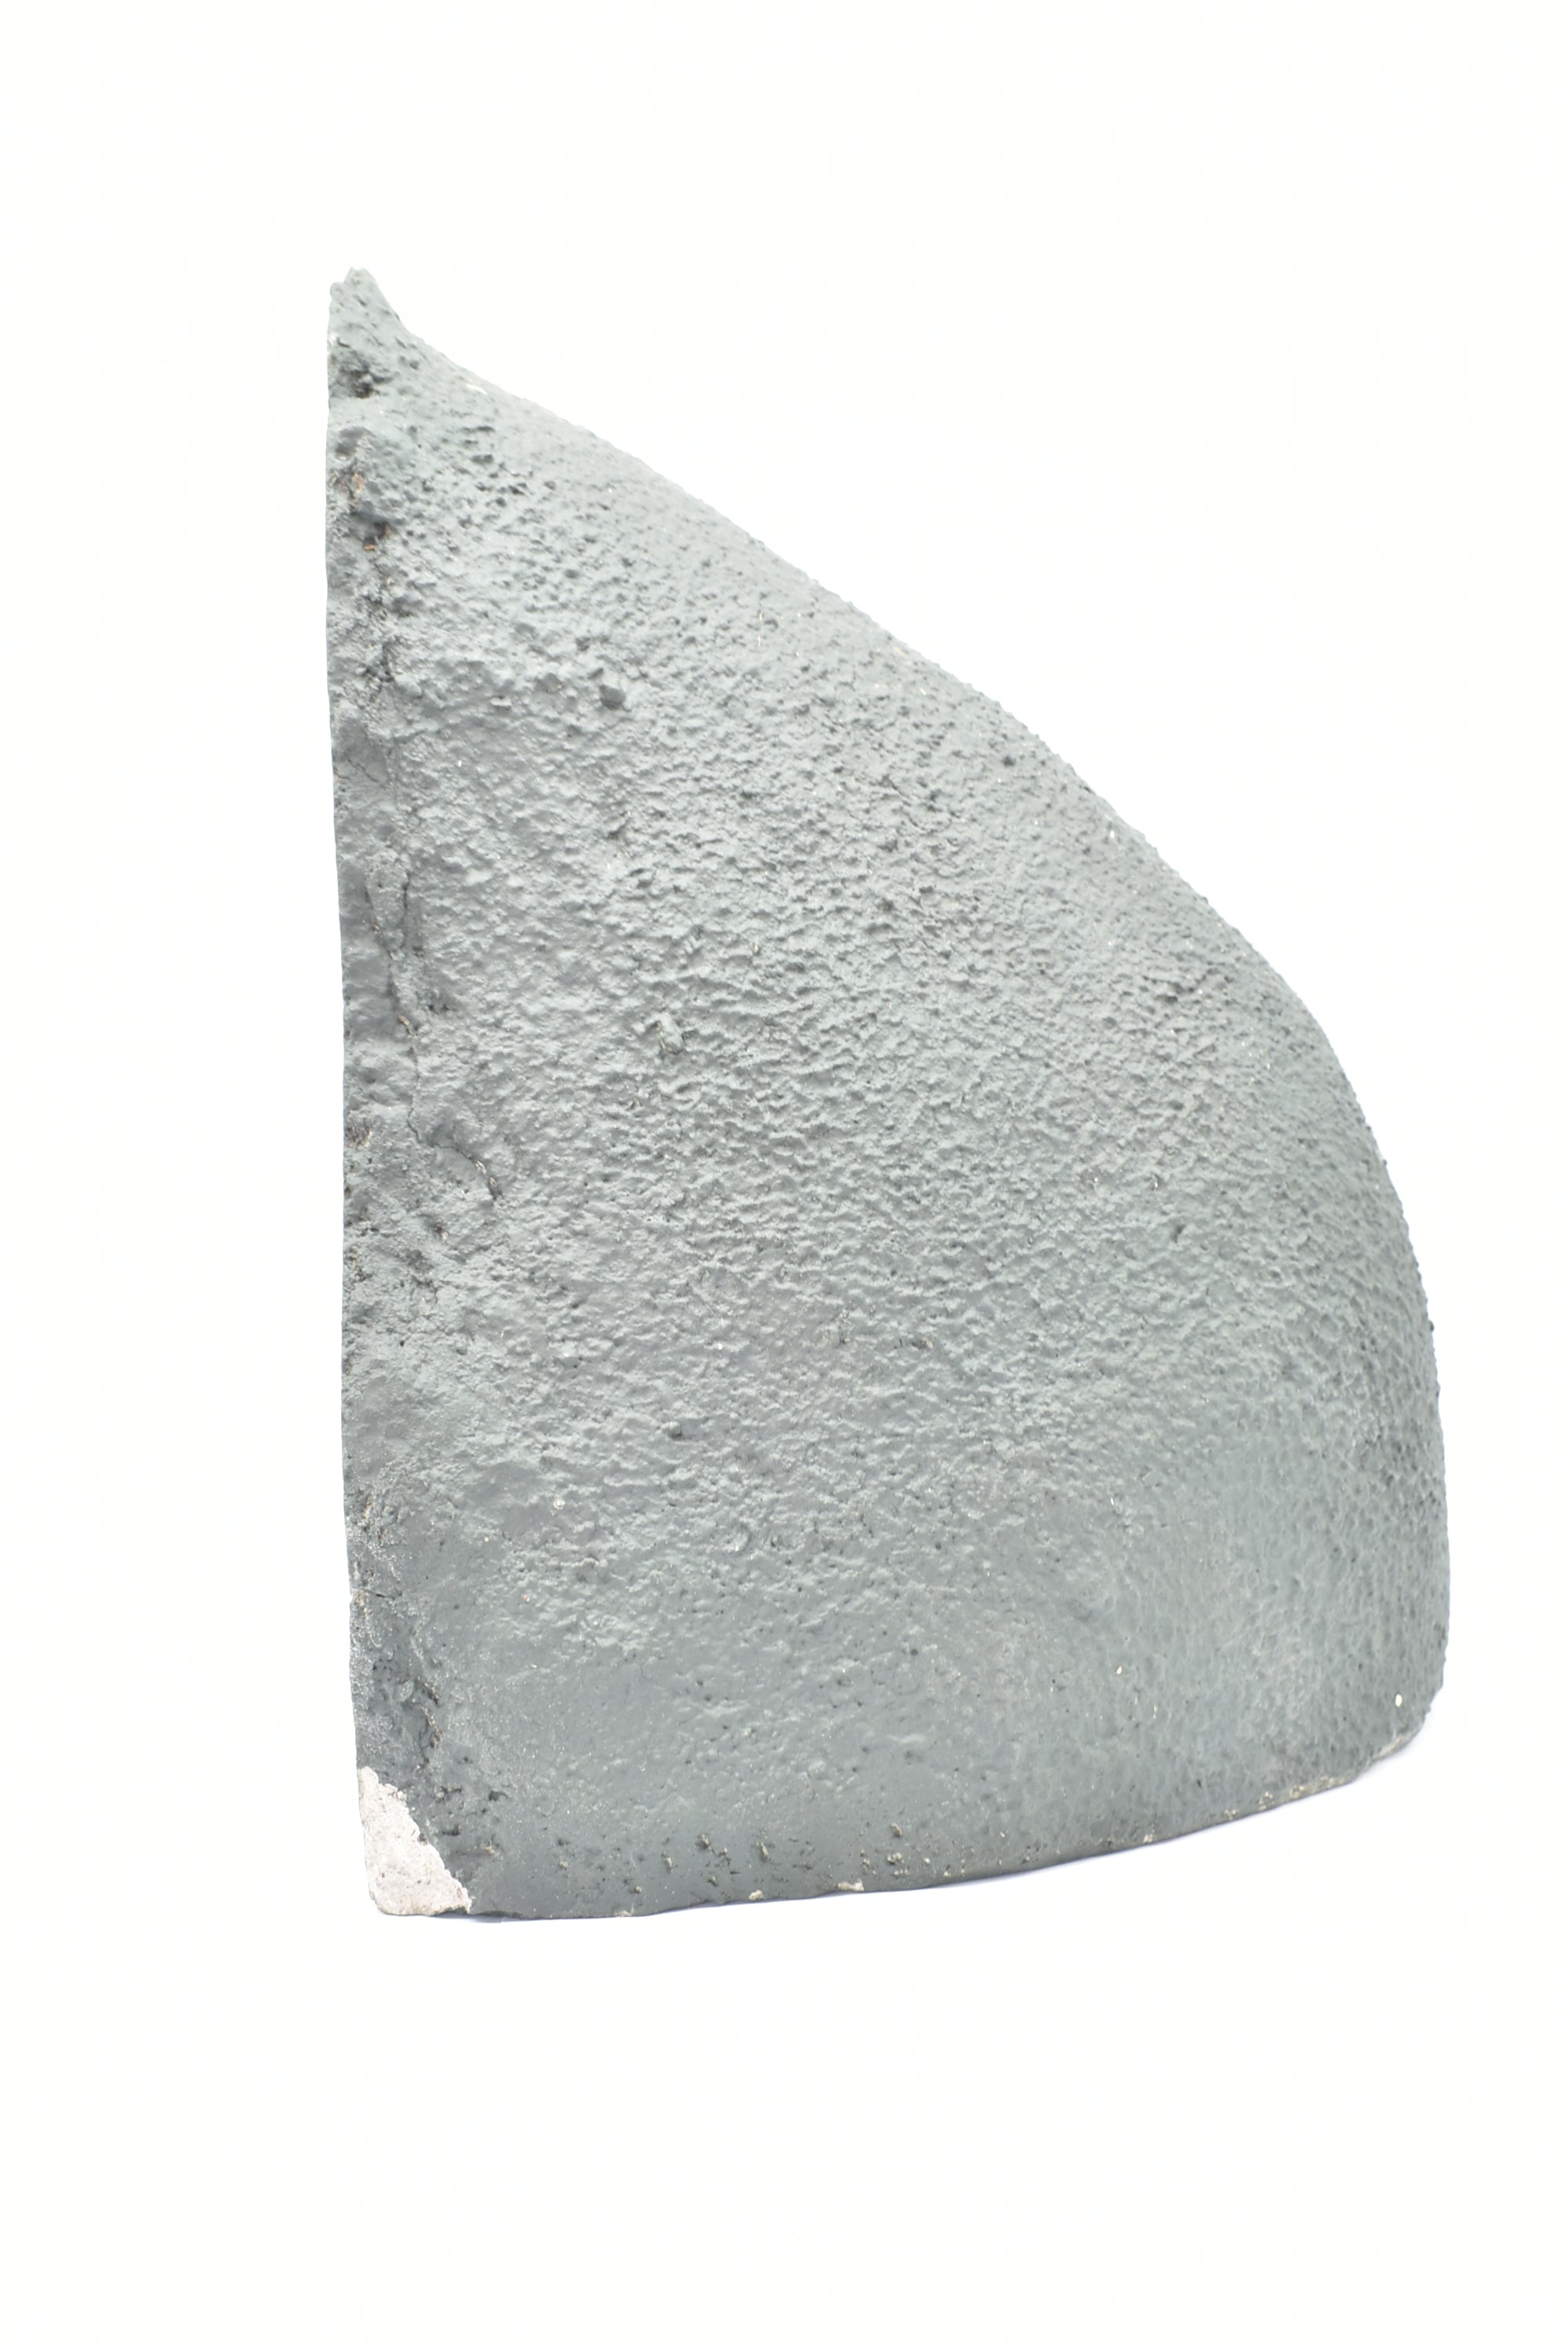 Amethyst Geode 7.8 Kg